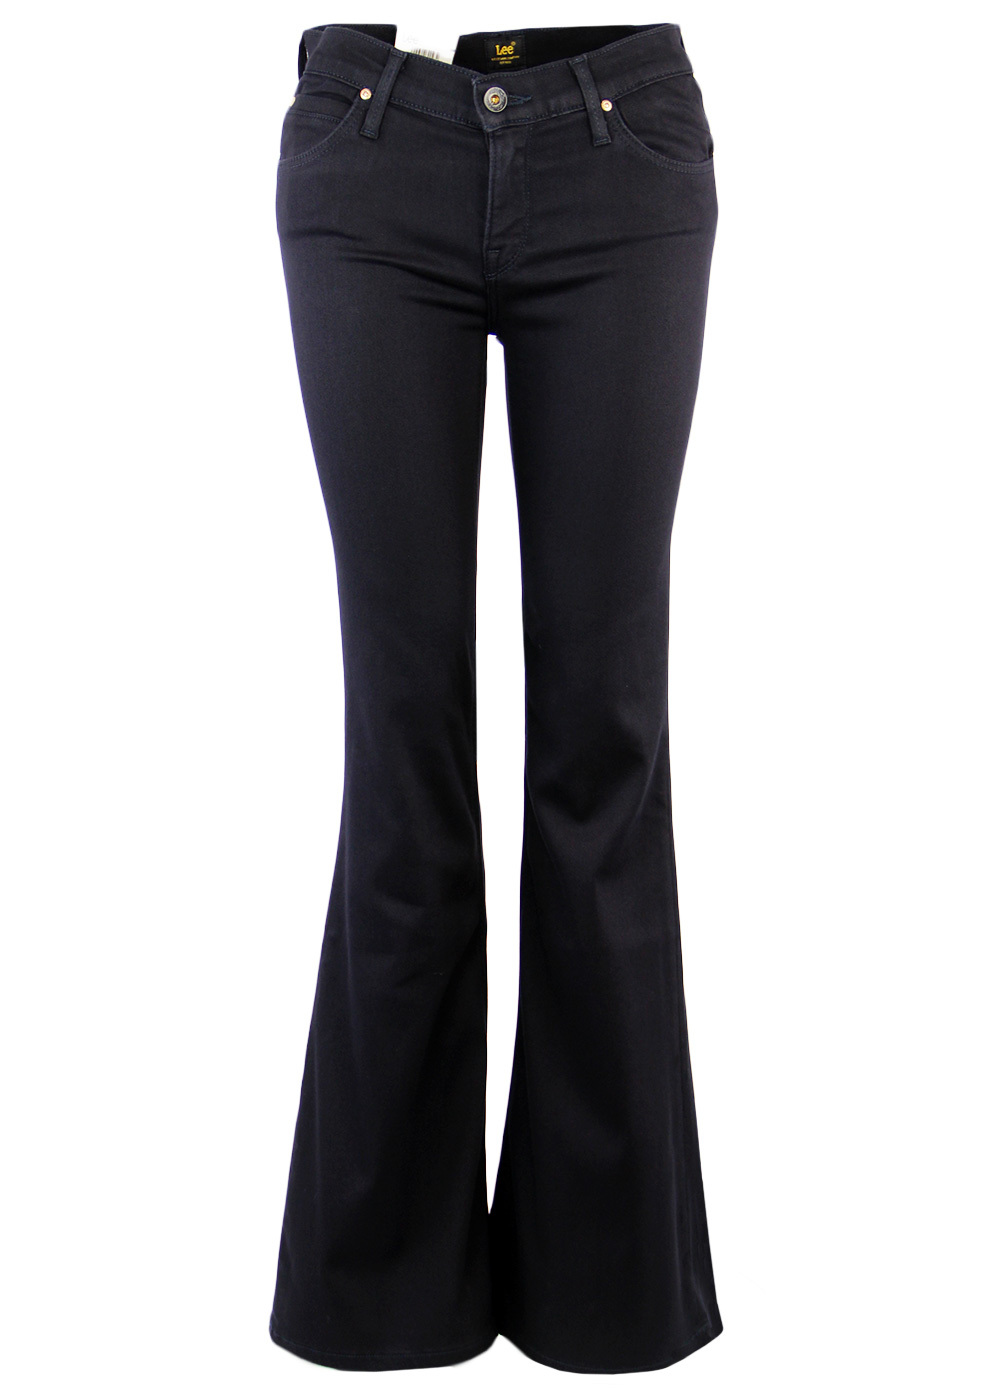 Annetta LEE Retro 70s Wide Flare Black Denim Jeans